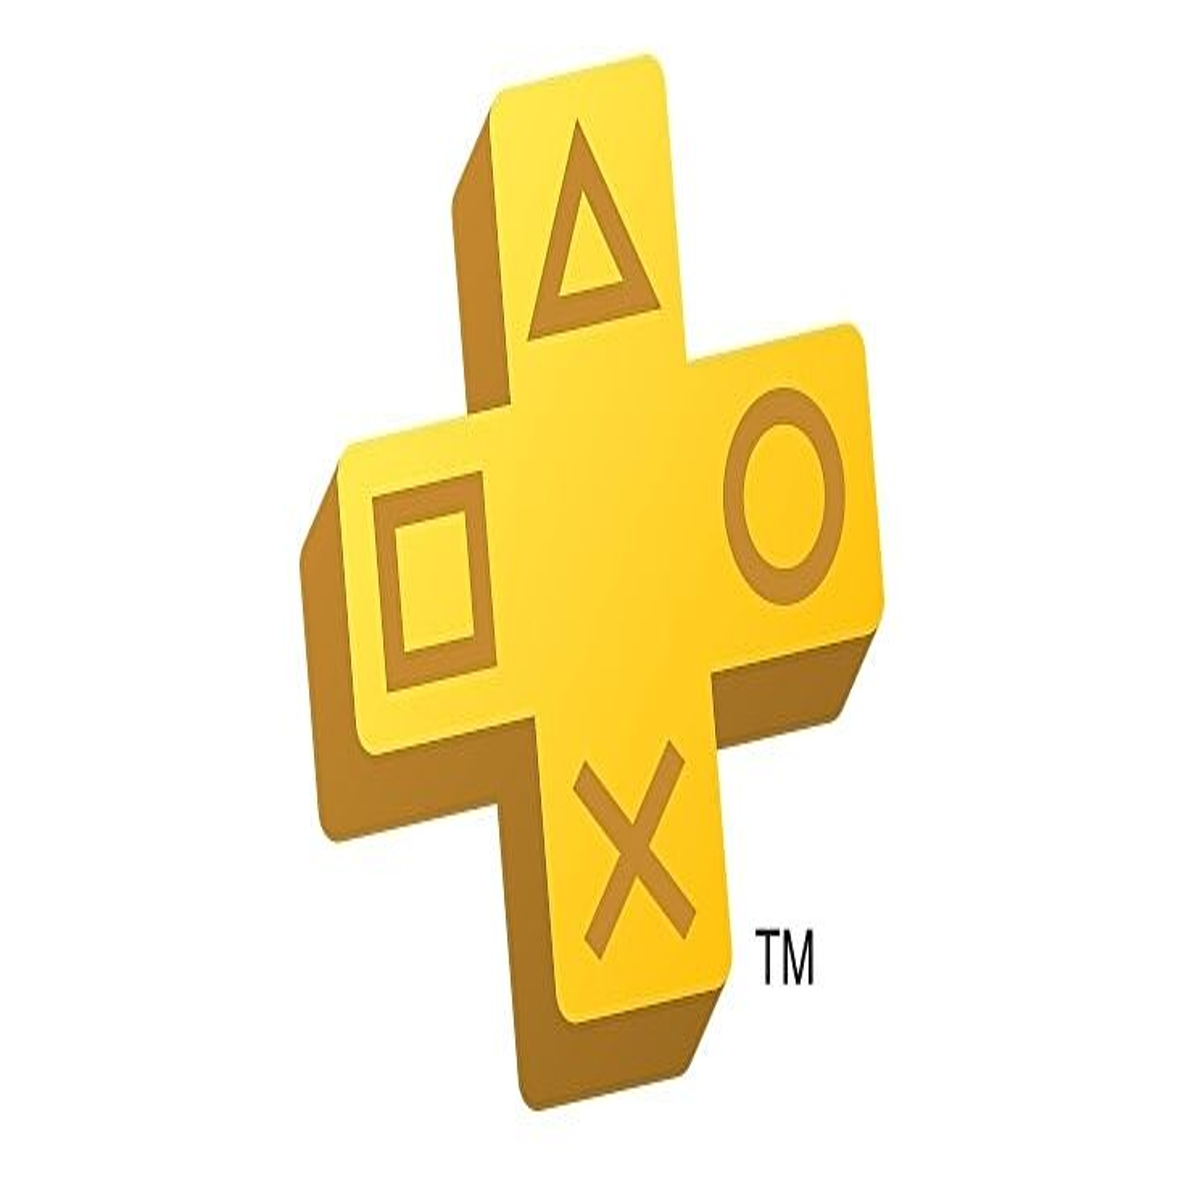 PlayStation Plus: saiba quais serão os jogos de Junho de 2022 - ADNEWS